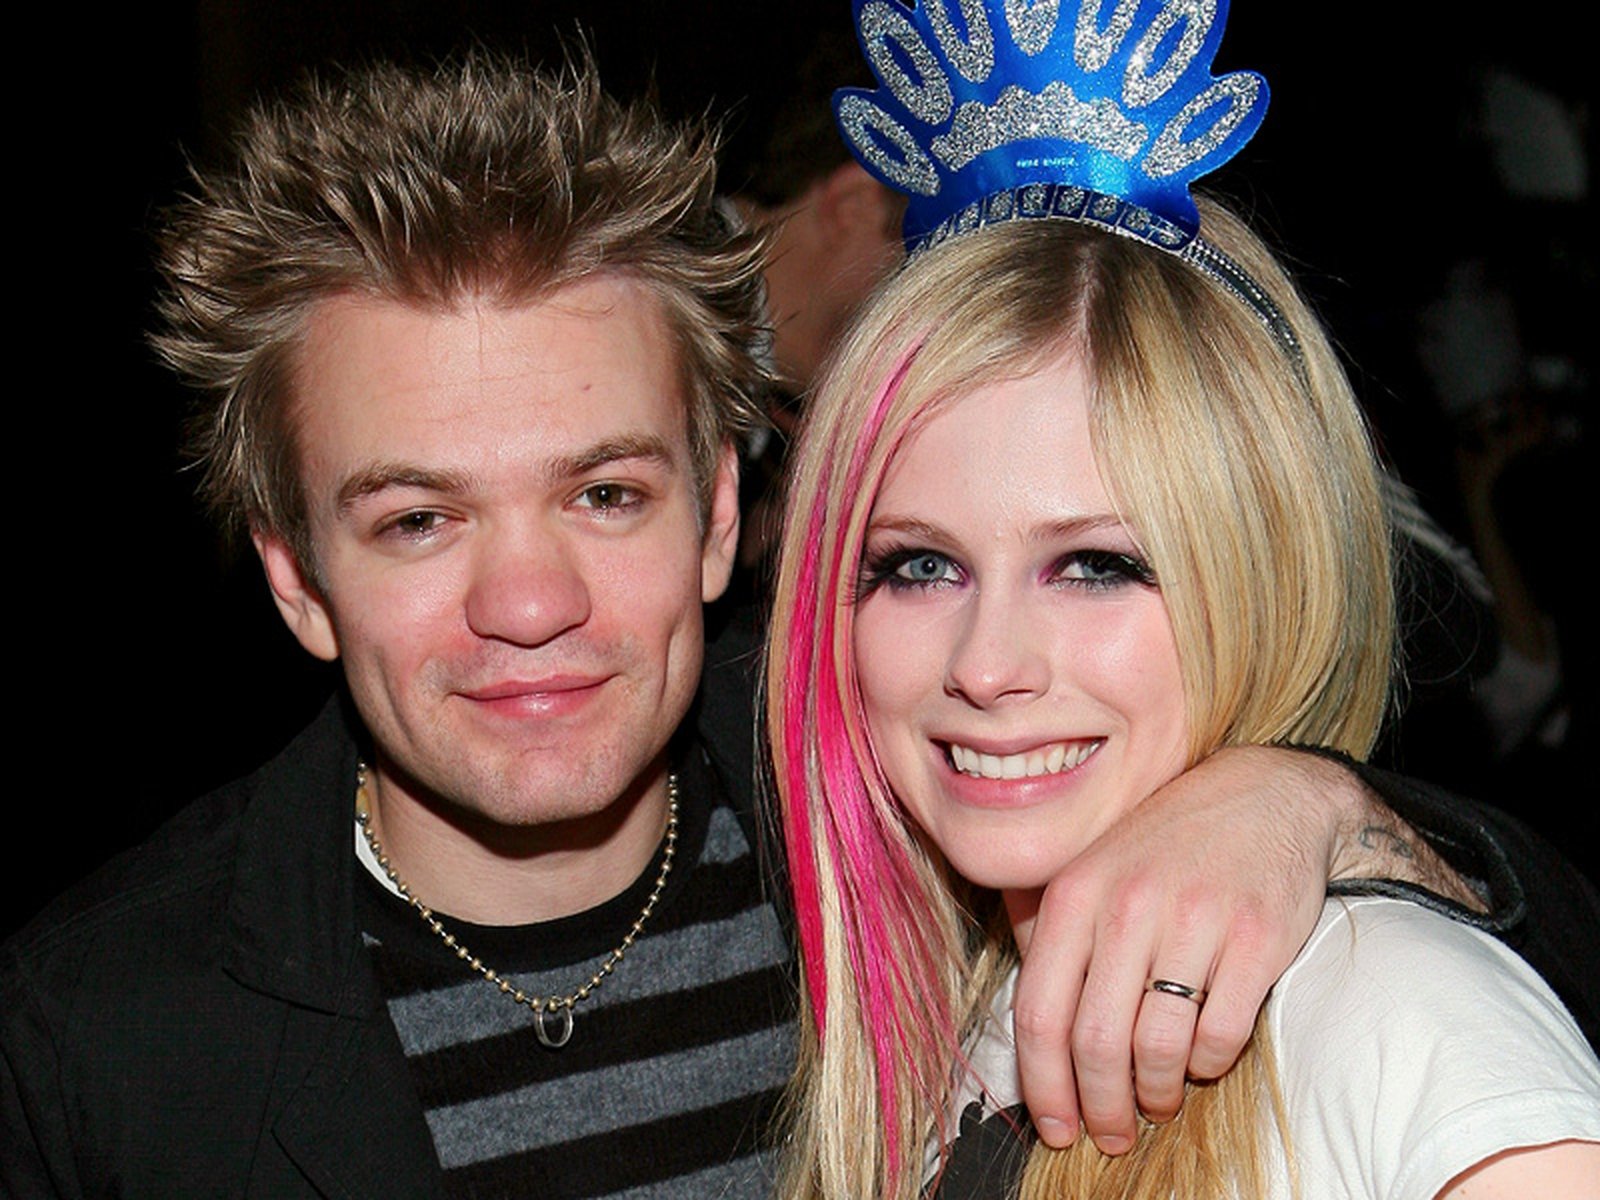 Singer Lavigne files for a divorce